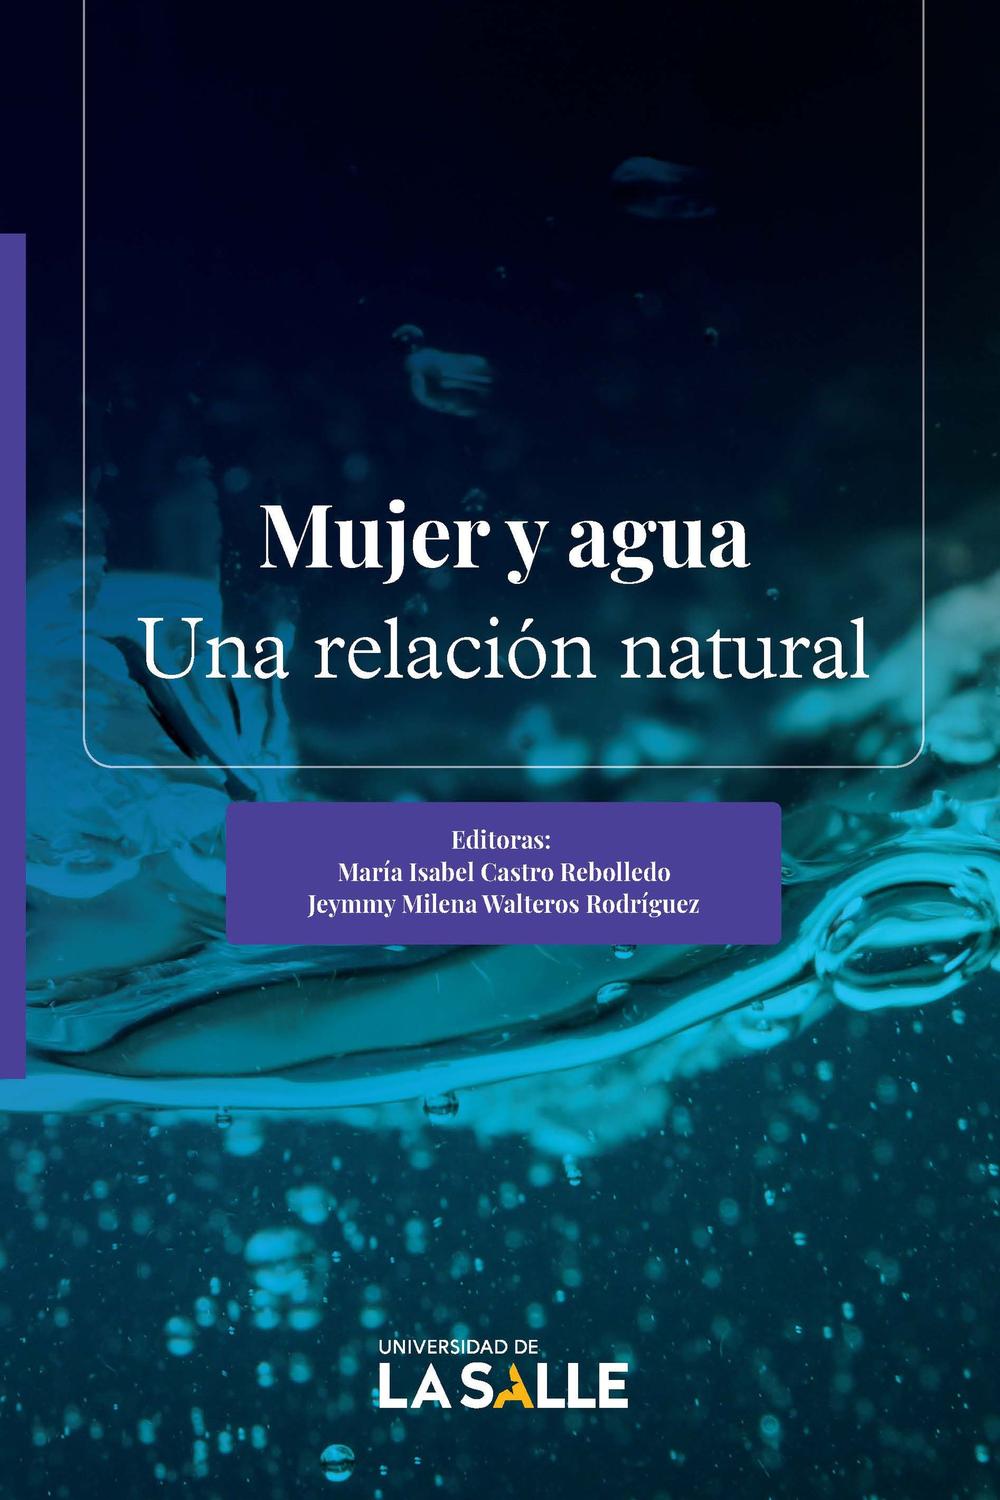 Mujer y agua - María Isabel Castro Rebolledo, Jeymmy Milena Walteros Rodríguez